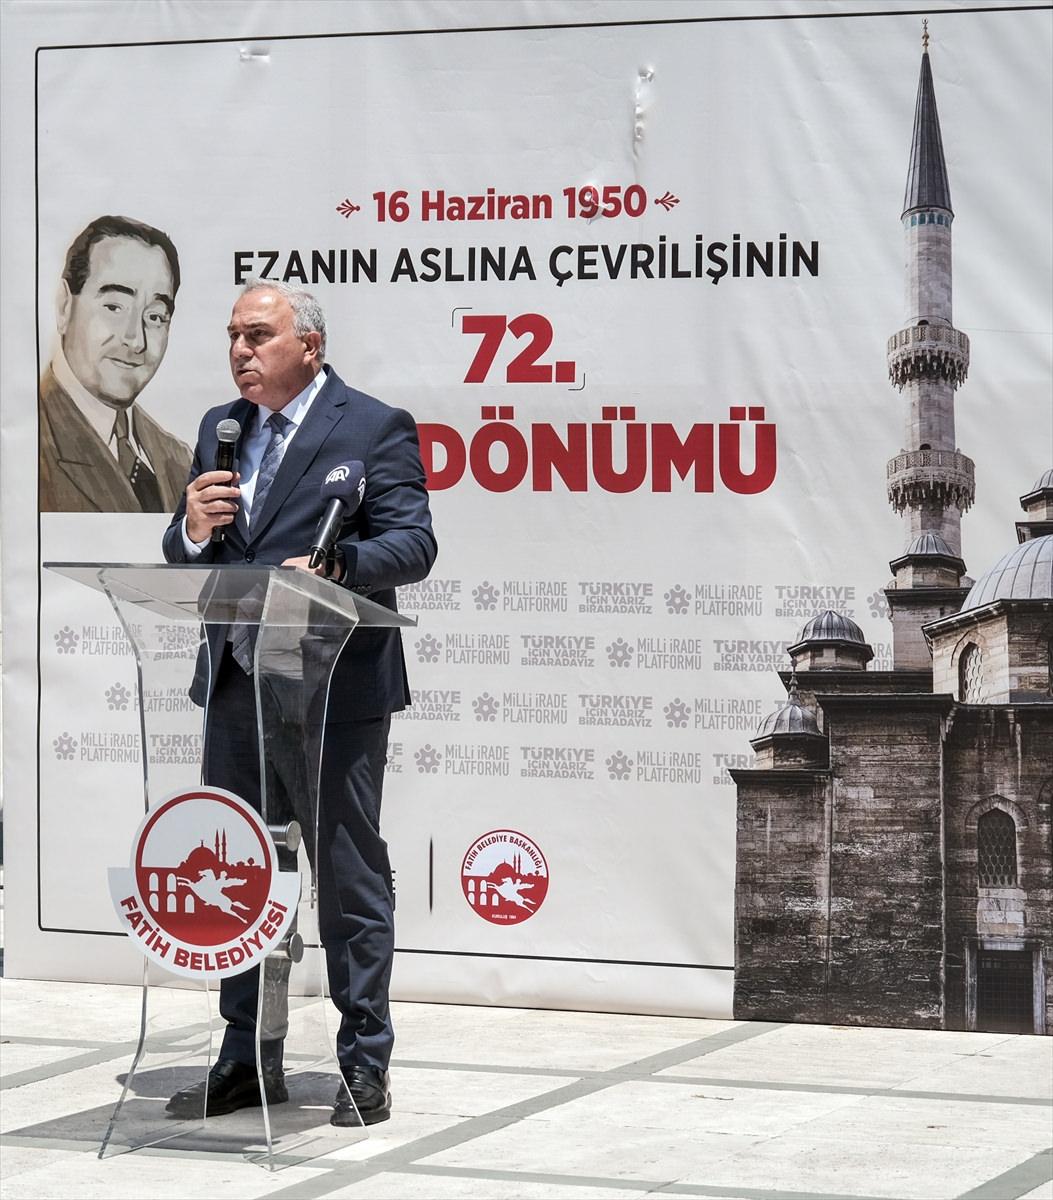 Fatih Belediye Başkanı Mehmet Ergün Turan